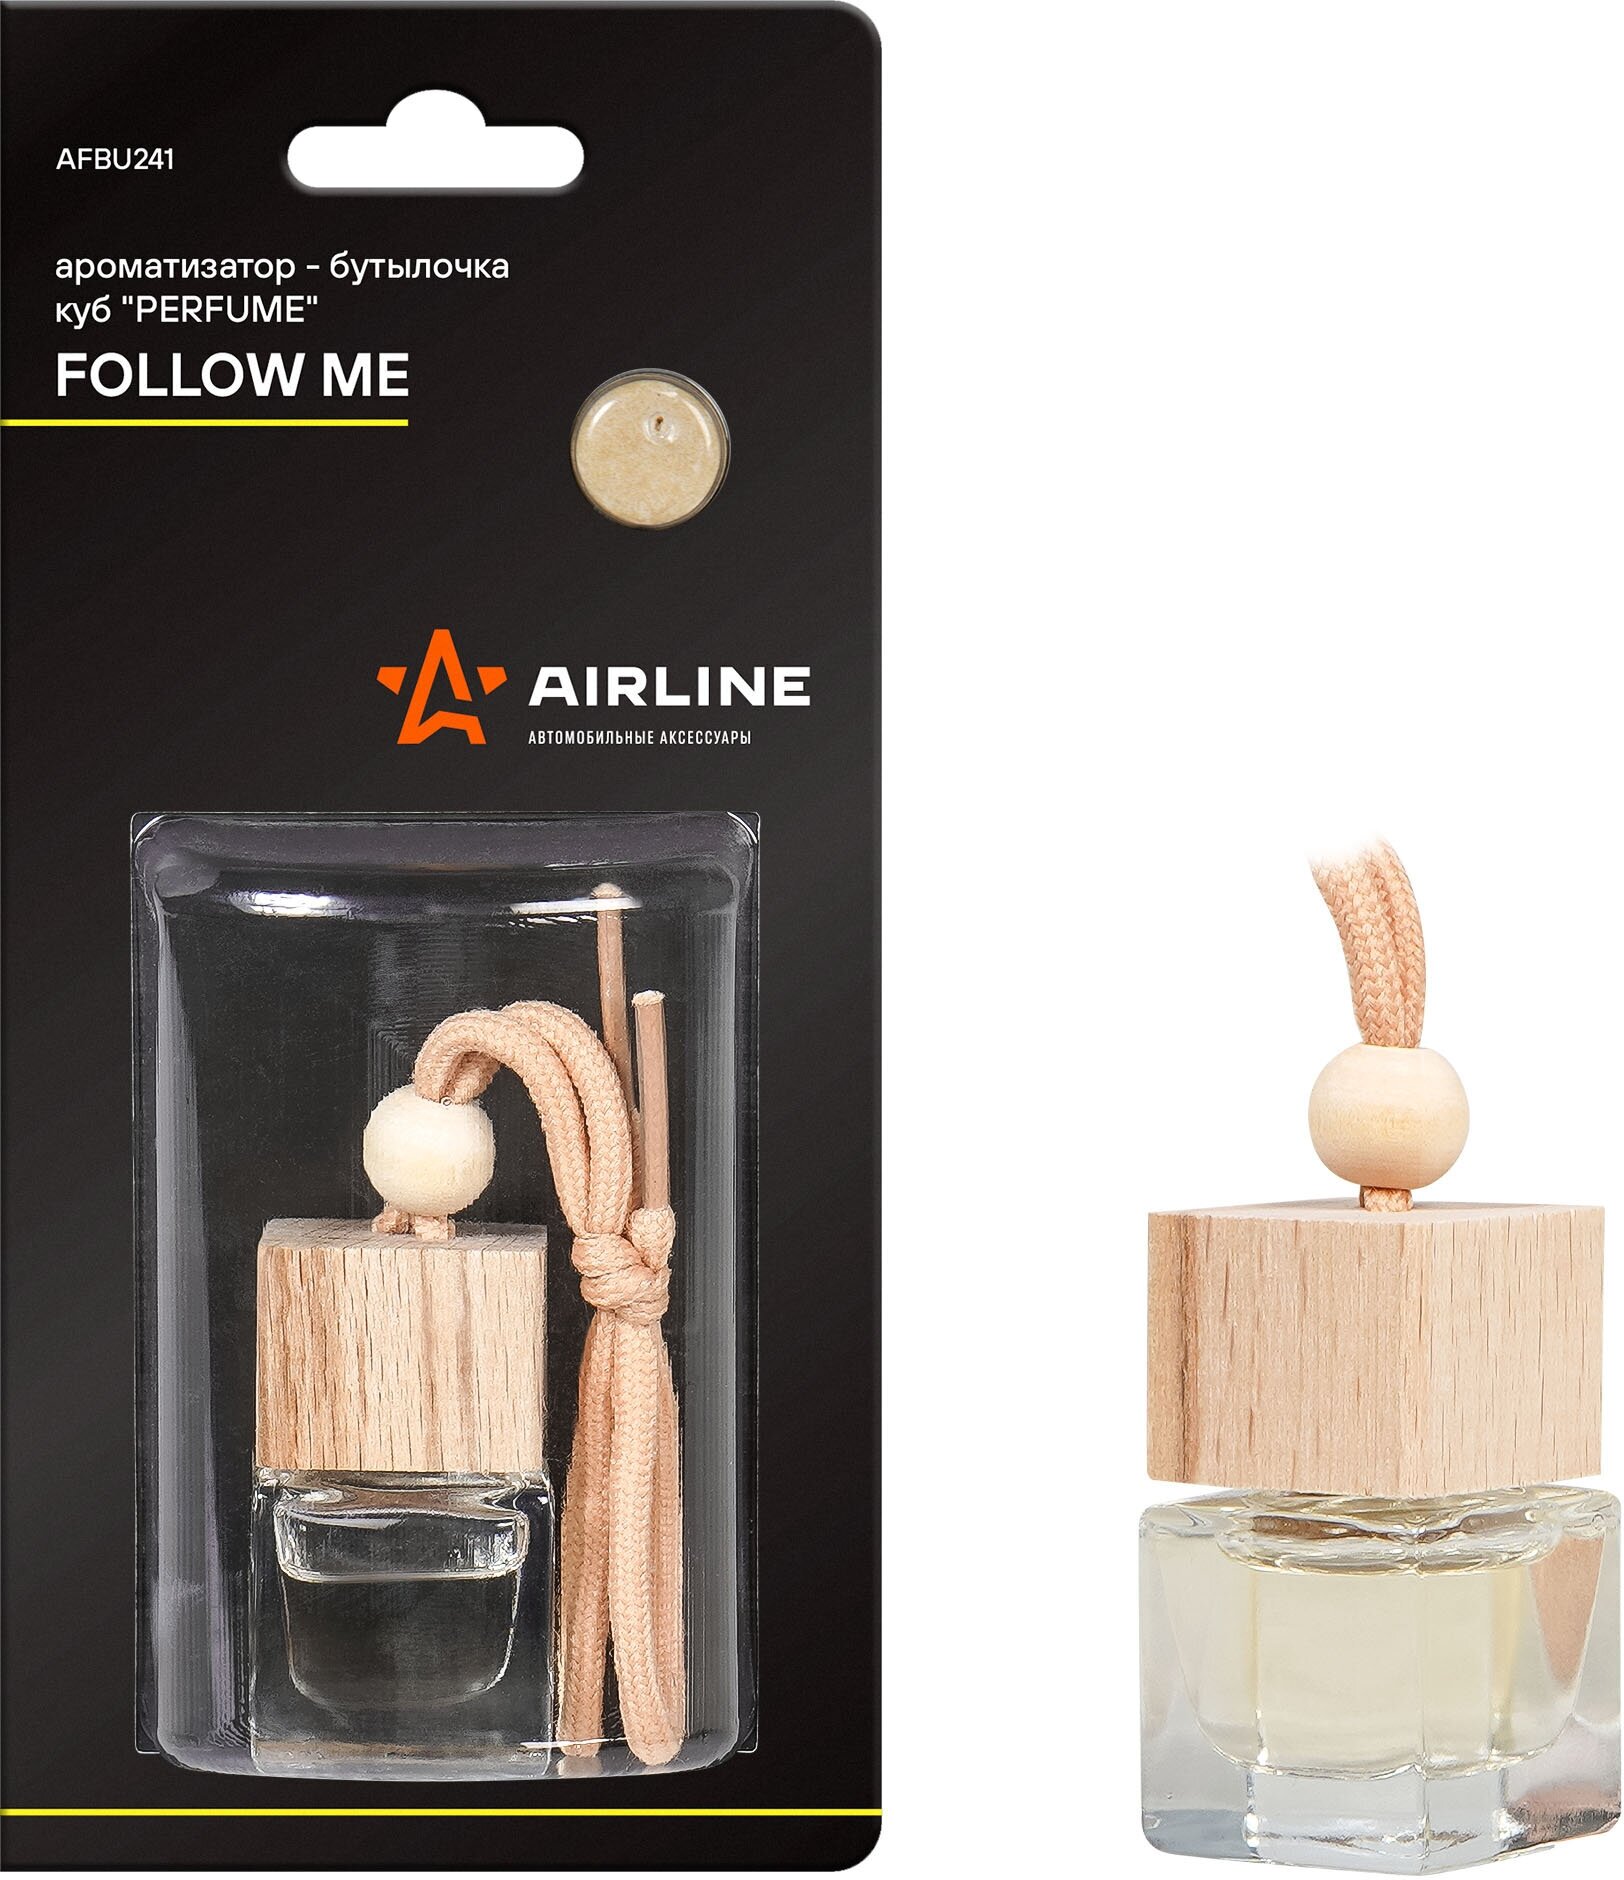 Ароматизатор-бутылочка куб "Perfume" FOLLOW ME AIRLINE - фото №5